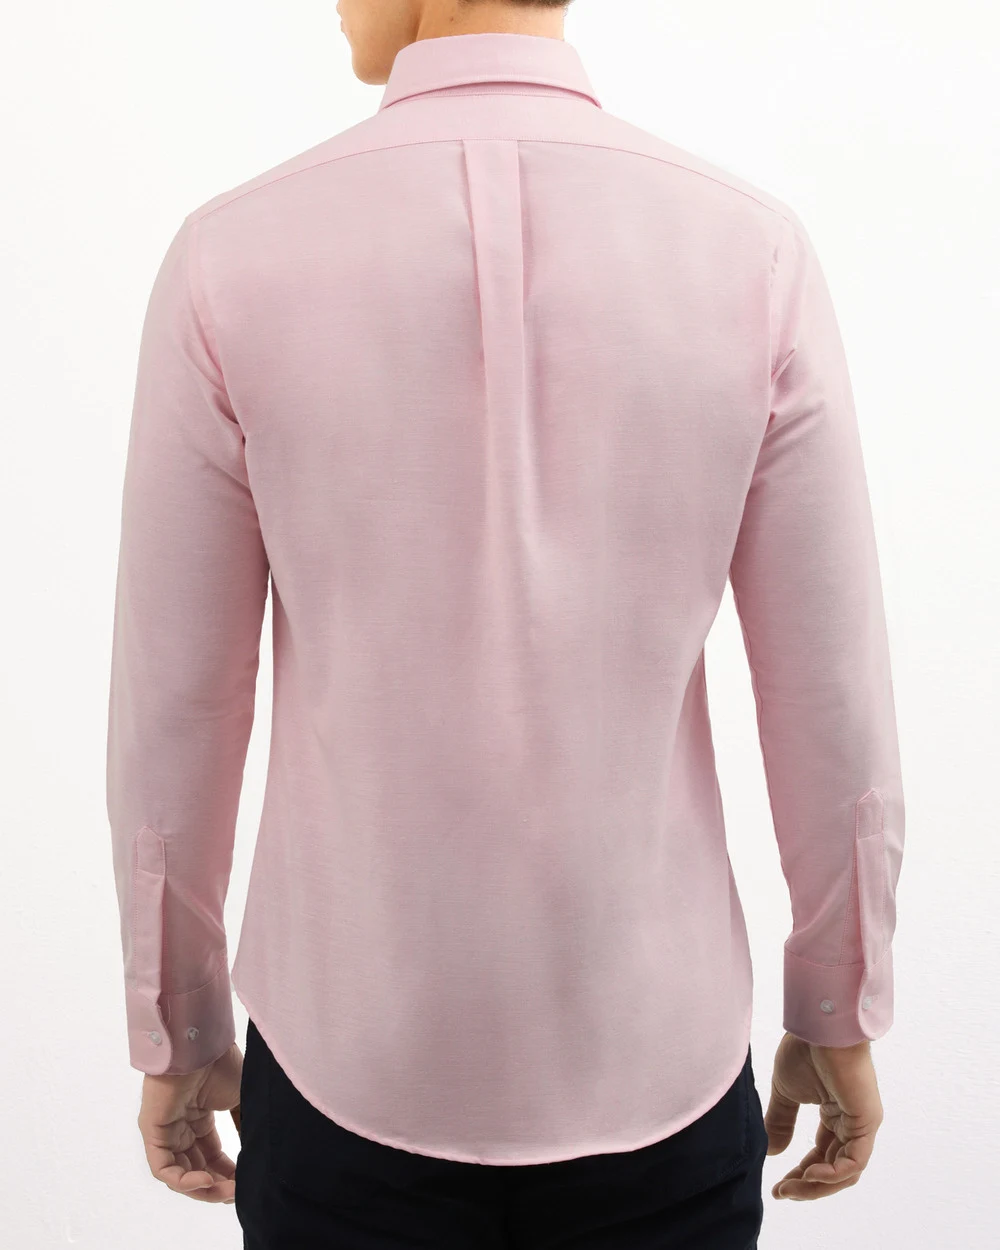 Camisa casual oxford rosada manga larga slim fit